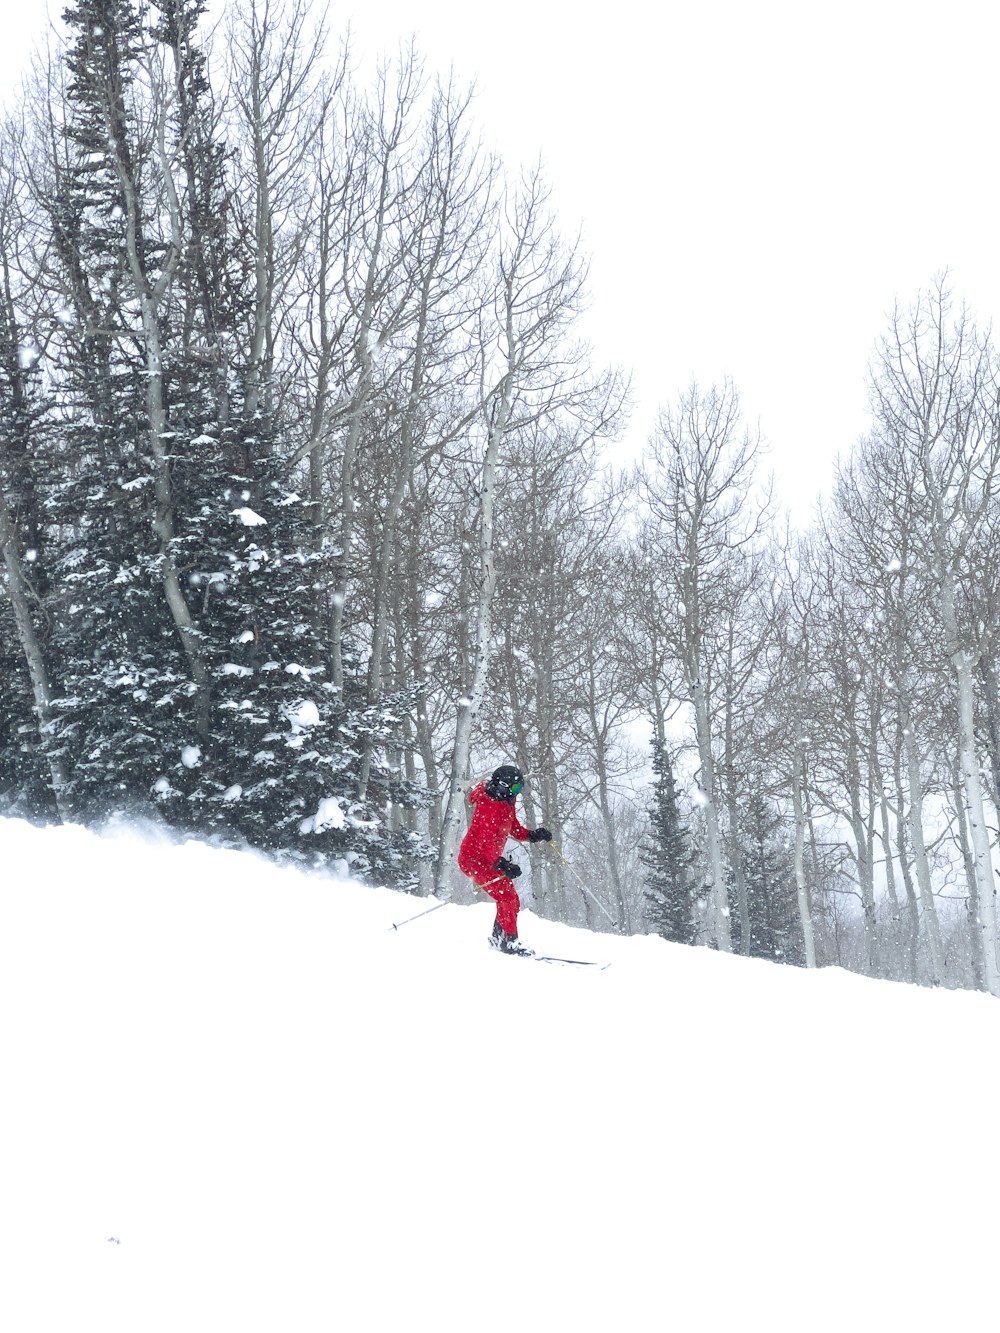 una persona esquiando por una colina nevada